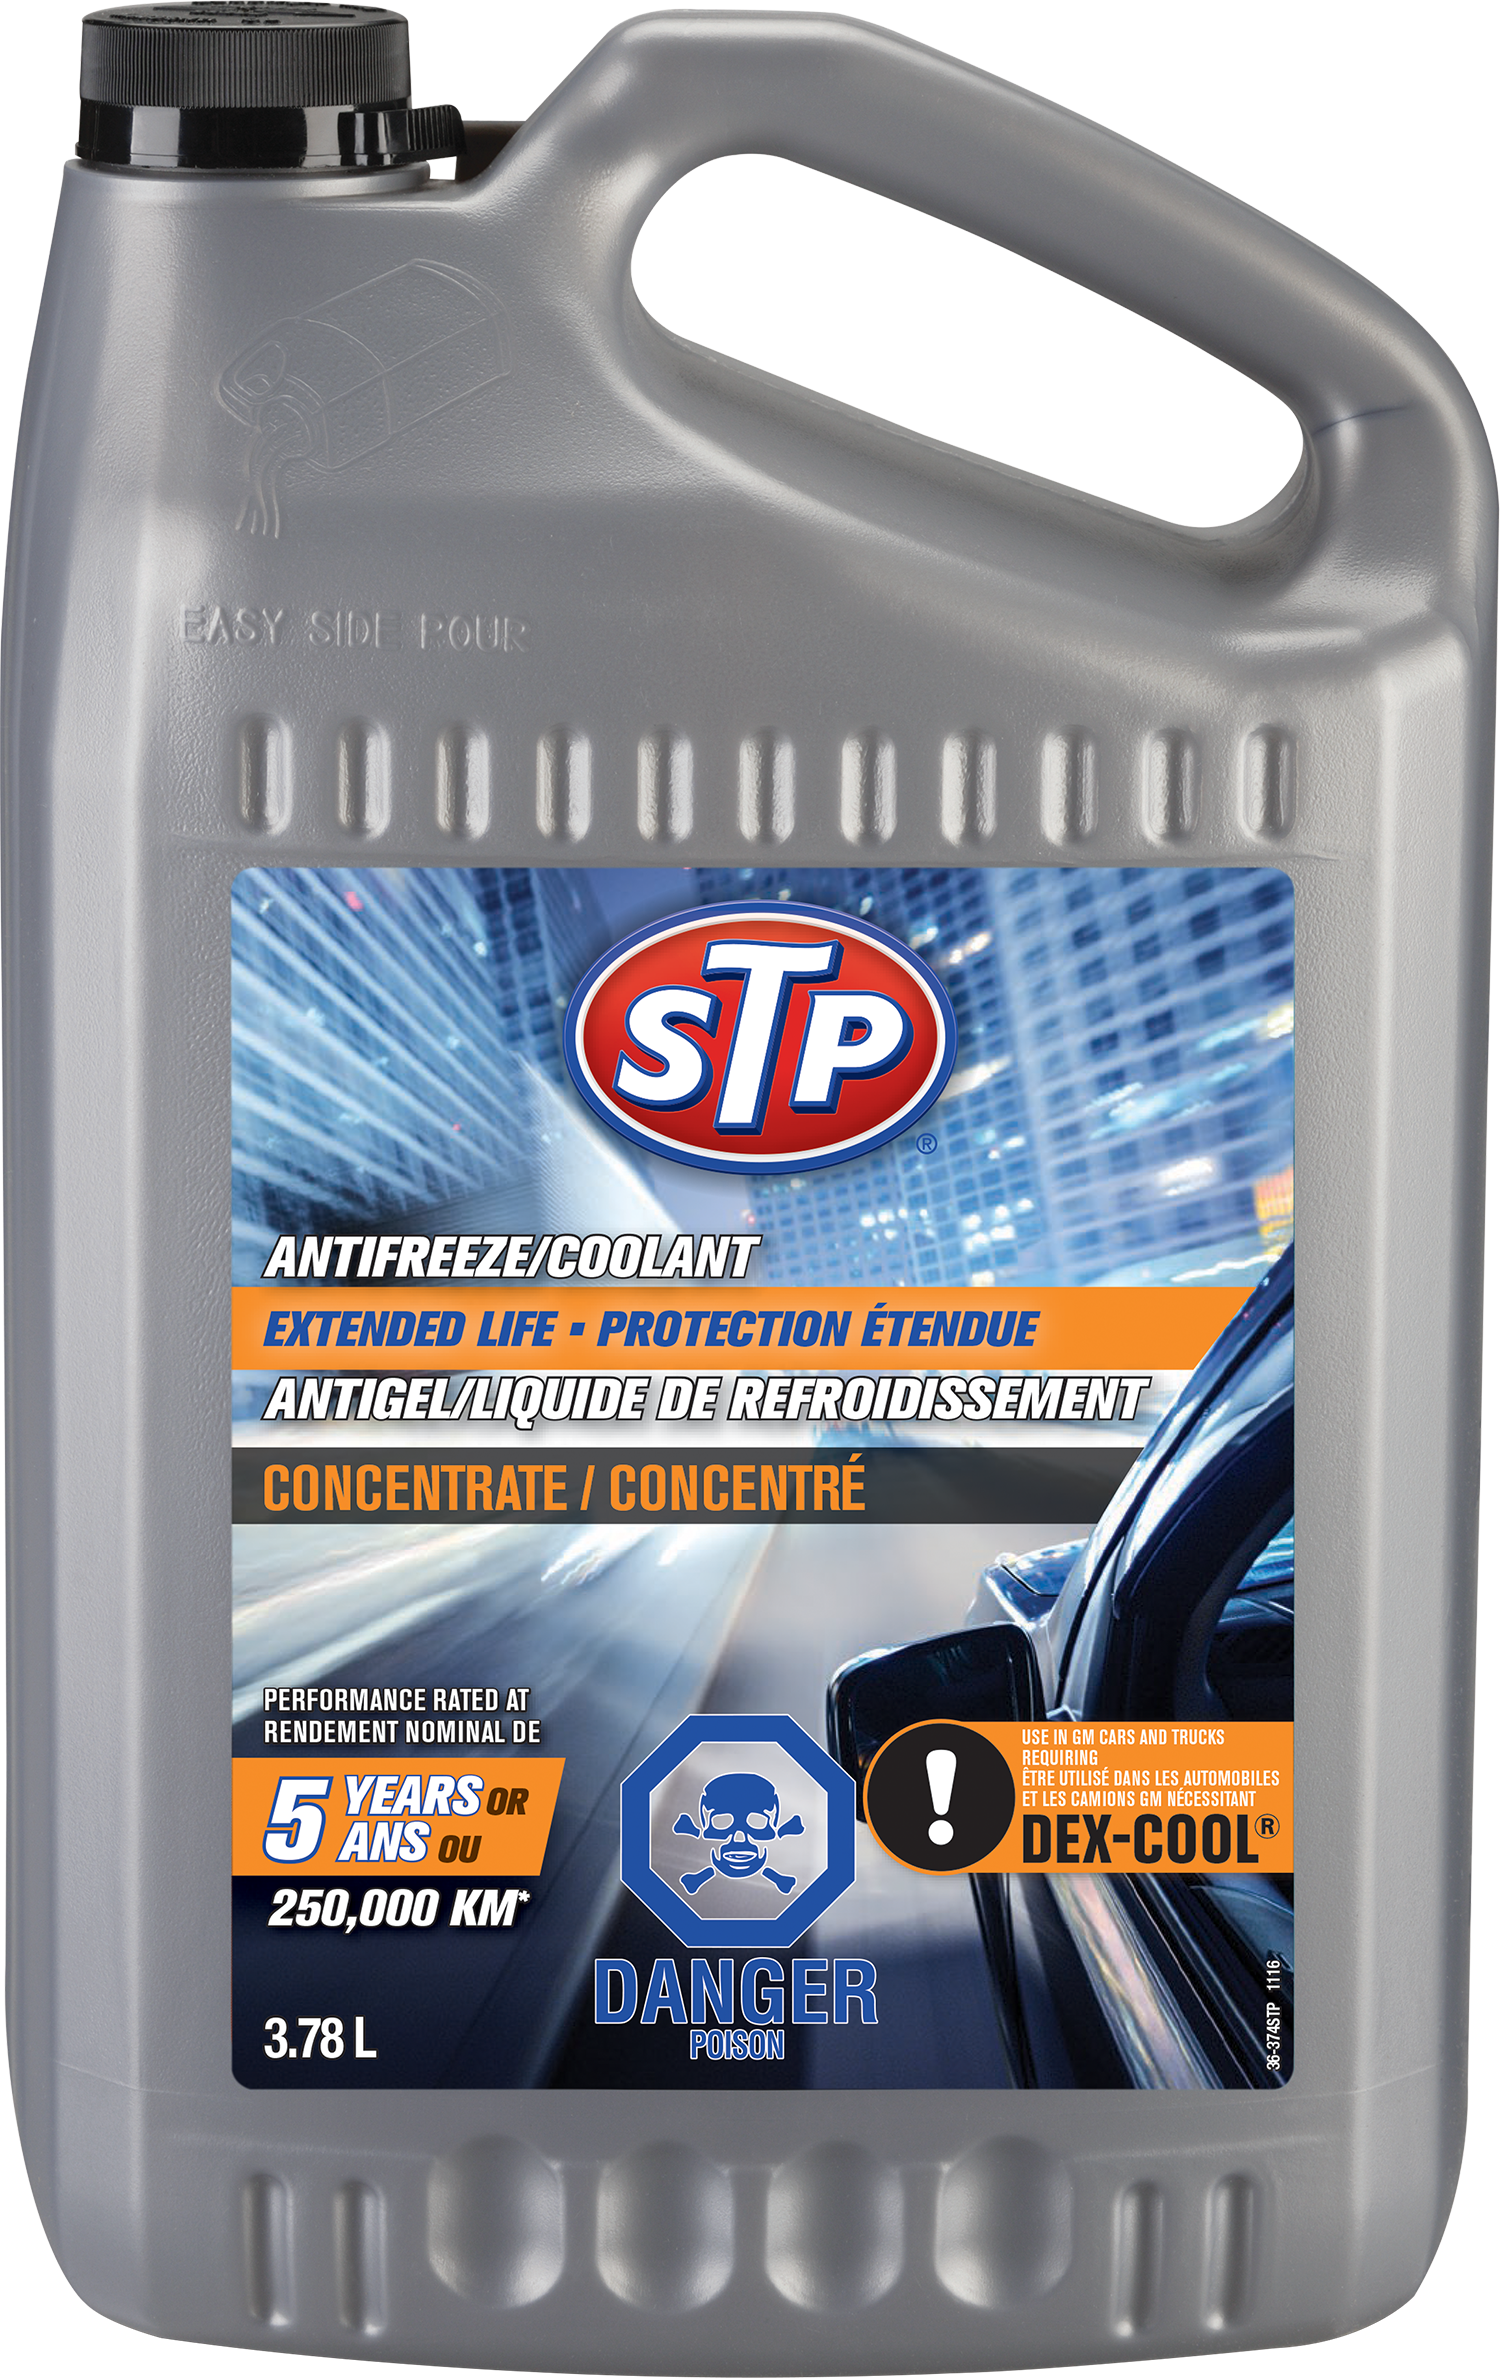 Antigel/liquide de refroidissement à protection étendue STP® - Recochem